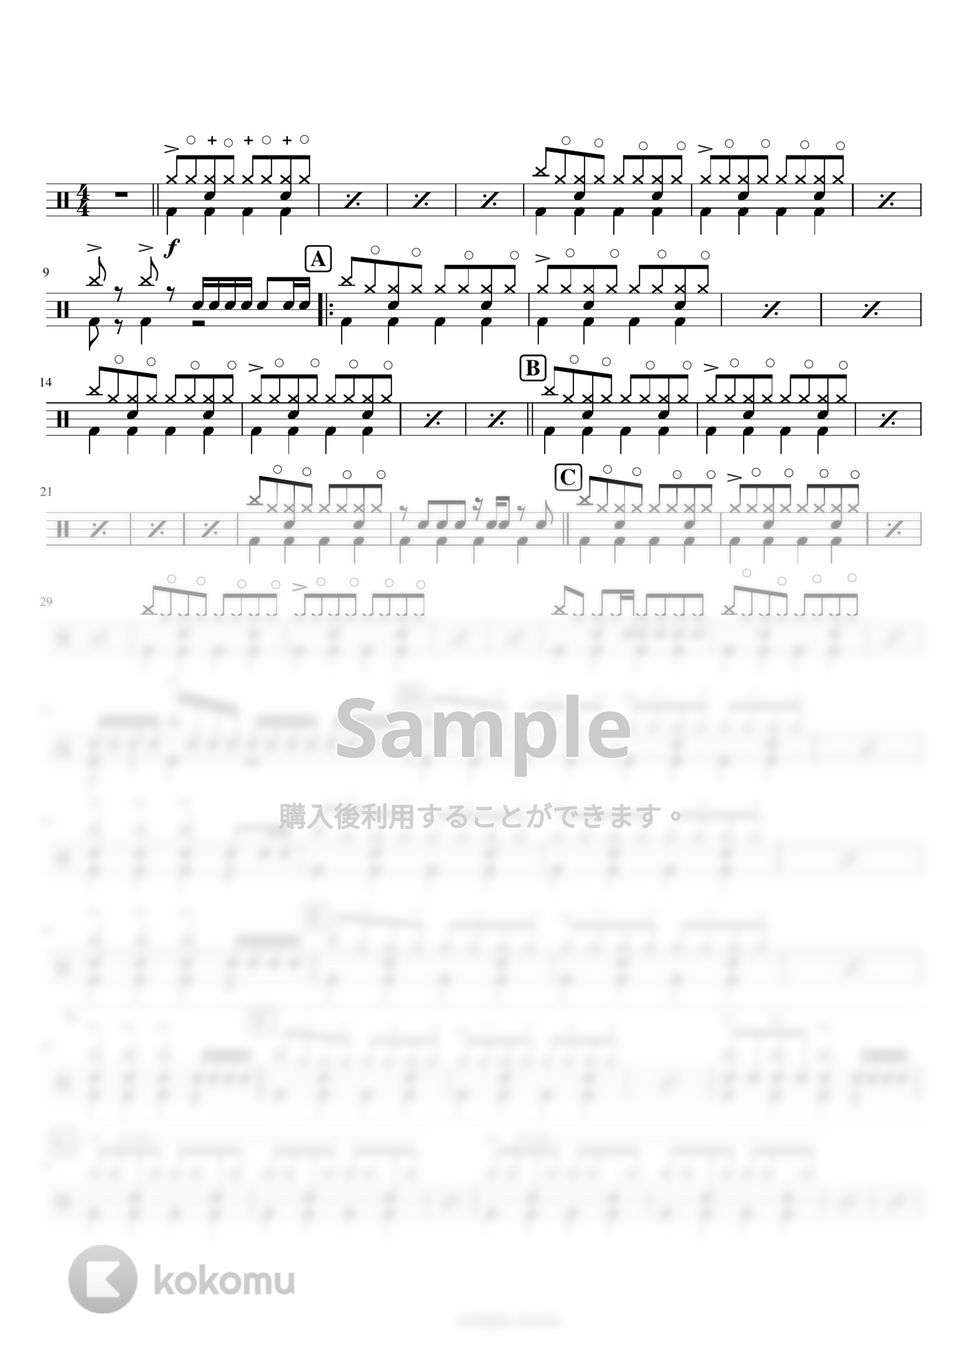 おジャ魔女どれみ - おジャ魔女カーニバル!! (吹奏楽 / 少人数 / パート譜 / ドラム) by orinpia music